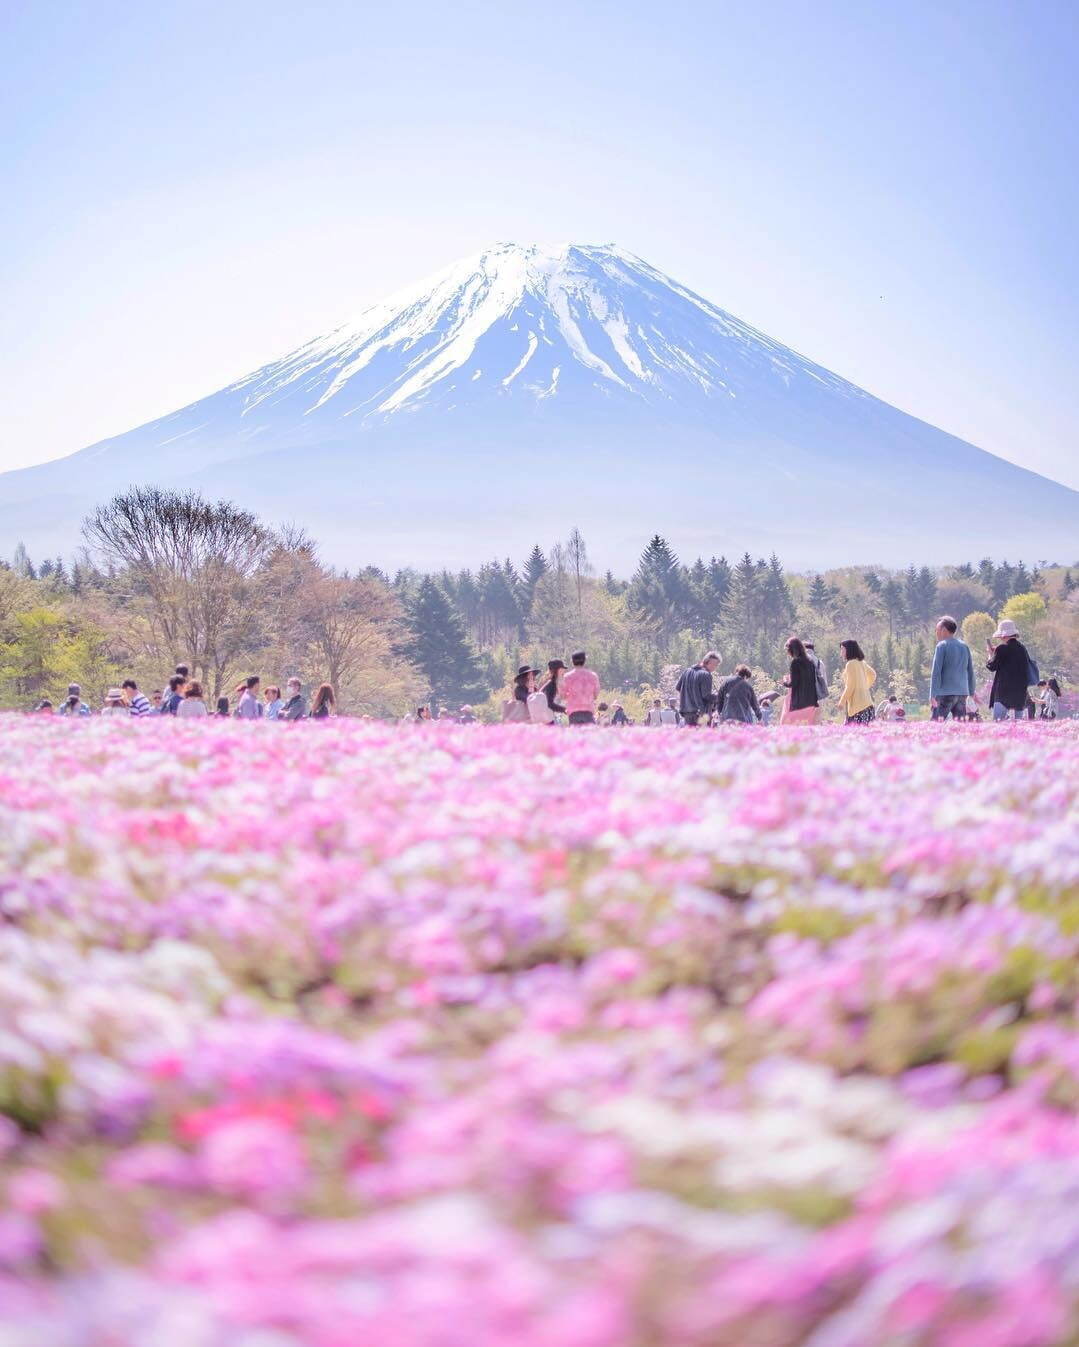 富士山麓の春の風物詩「富士芝桜まつり」約50万株の芝桜咲く絶景お花見イベント、山梨・富士河口湖で